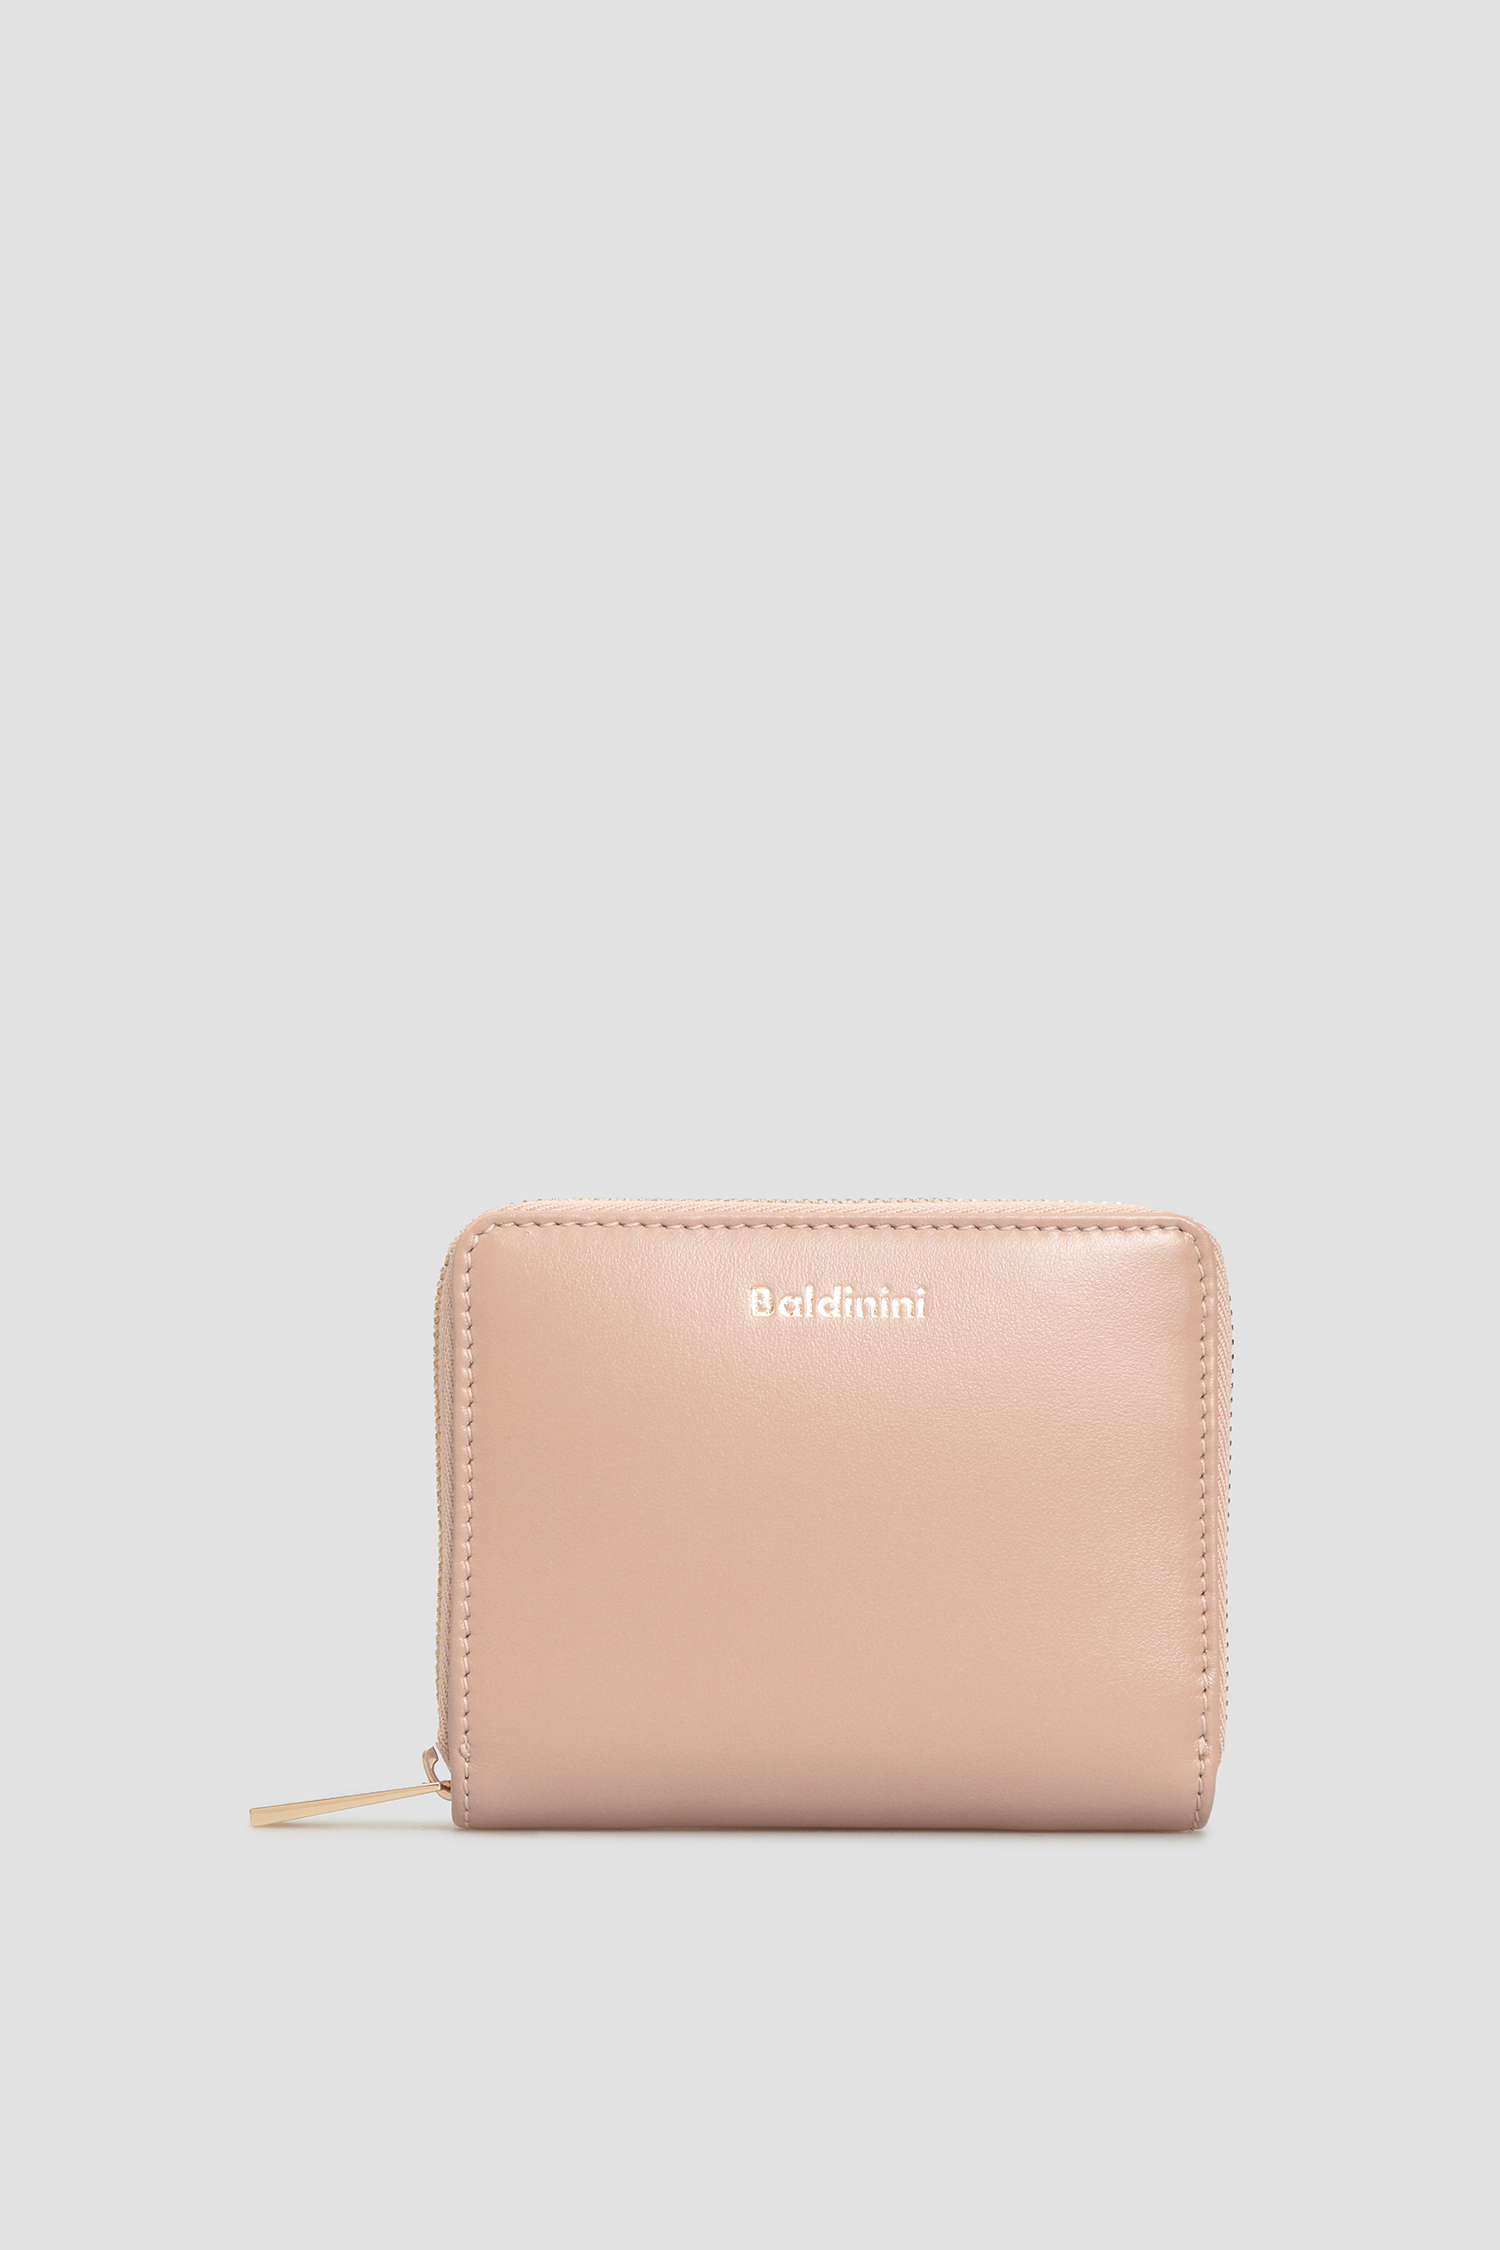 Пудровий шкіряний гаманець для дівчат Baldinini P2B001FIRE;7700